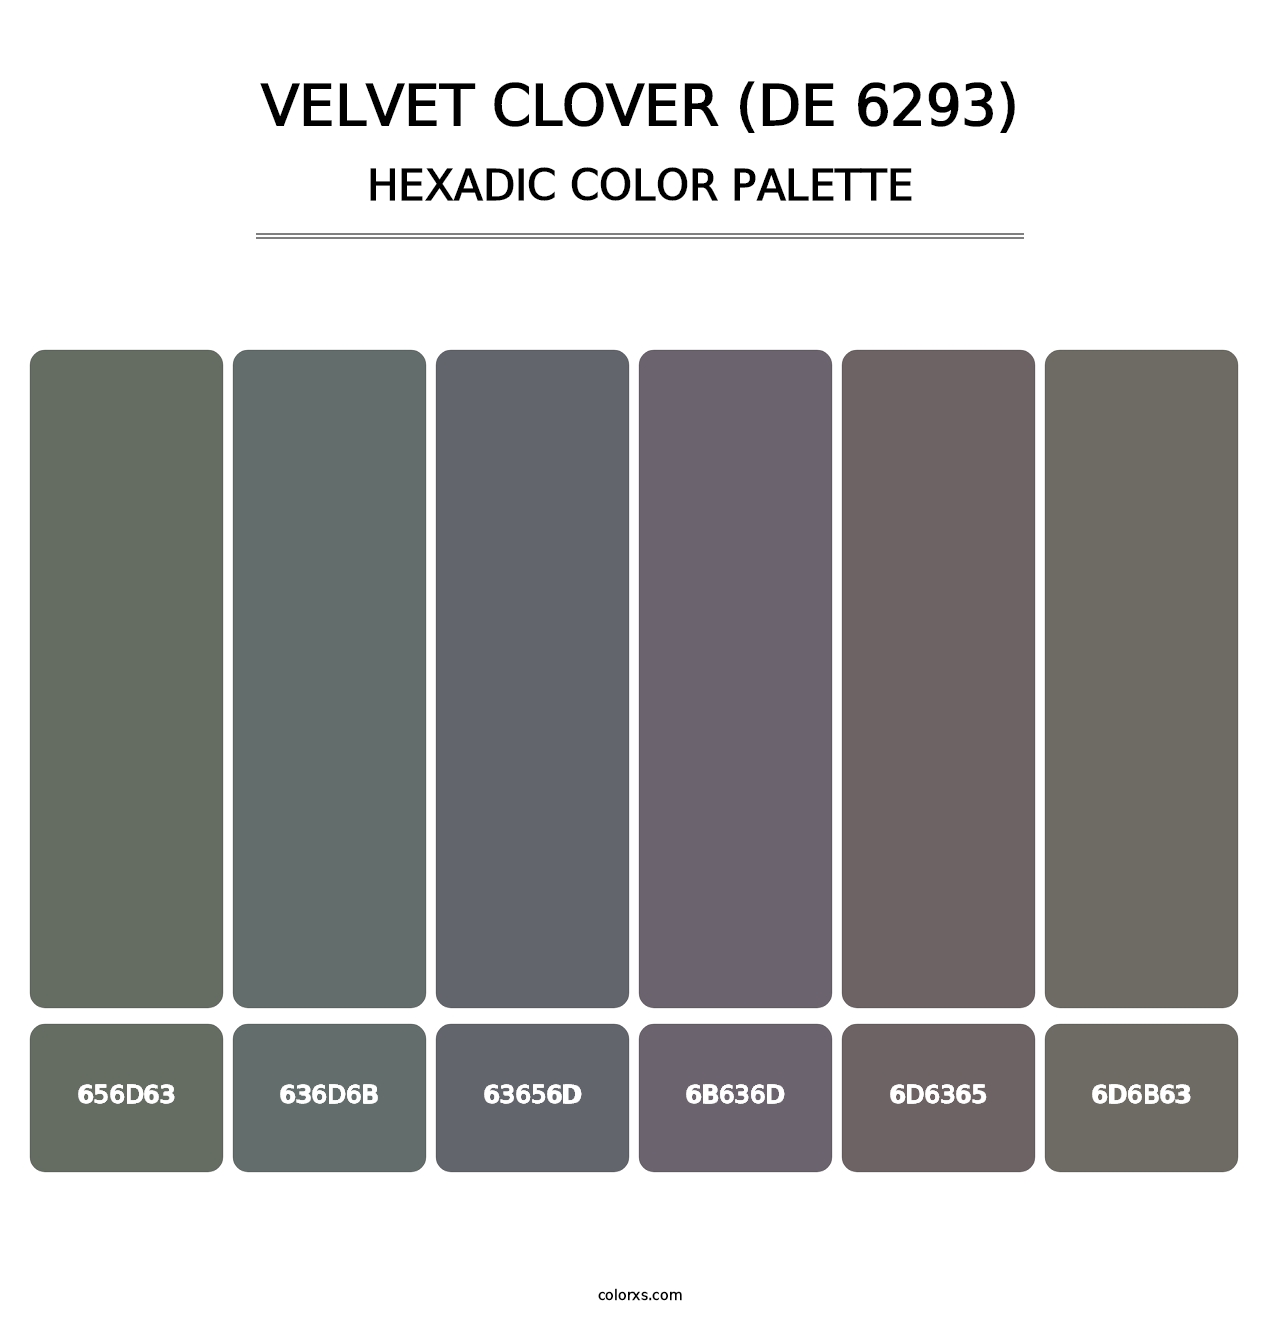 Velvet Clover (DE 6293) - Hexadic Color Palette